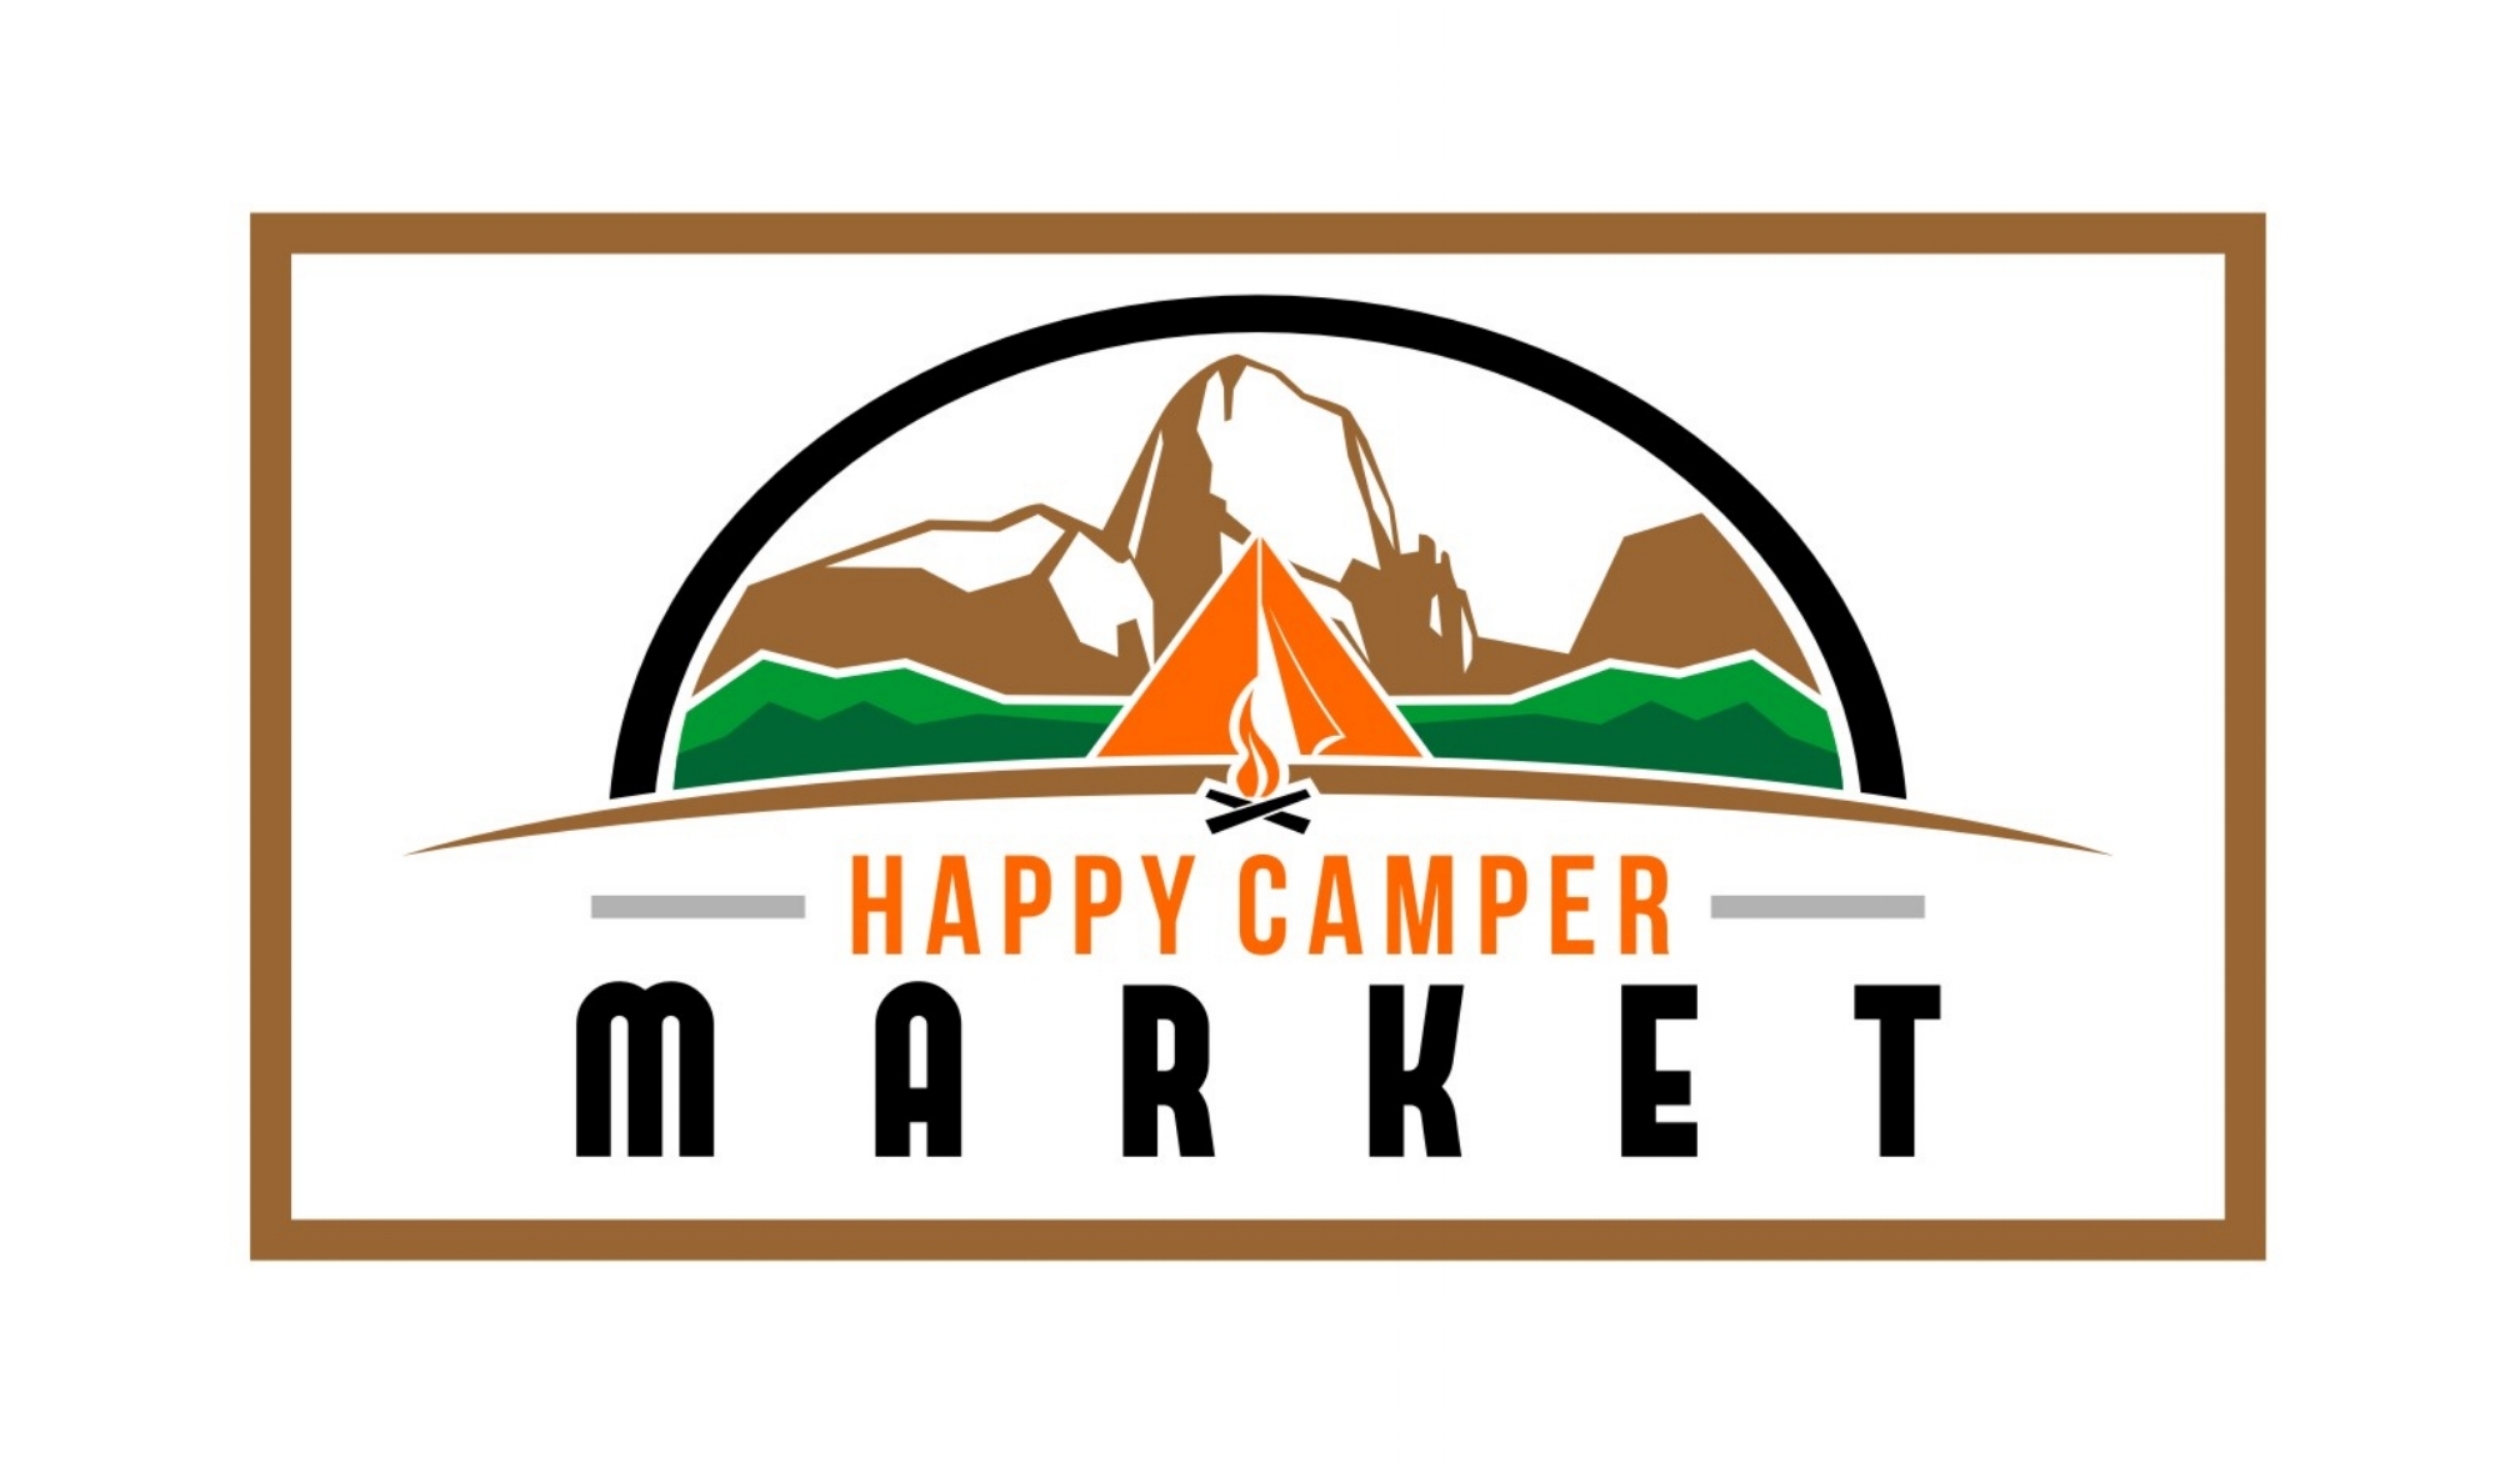 http://images.squarespace-cdn.com/content/v1/574366d3ab48de86e9fe39c2/1479856196750-4VFSG95CBUUV8IB5VBIS/happy+Camper+Market+logo.jpg